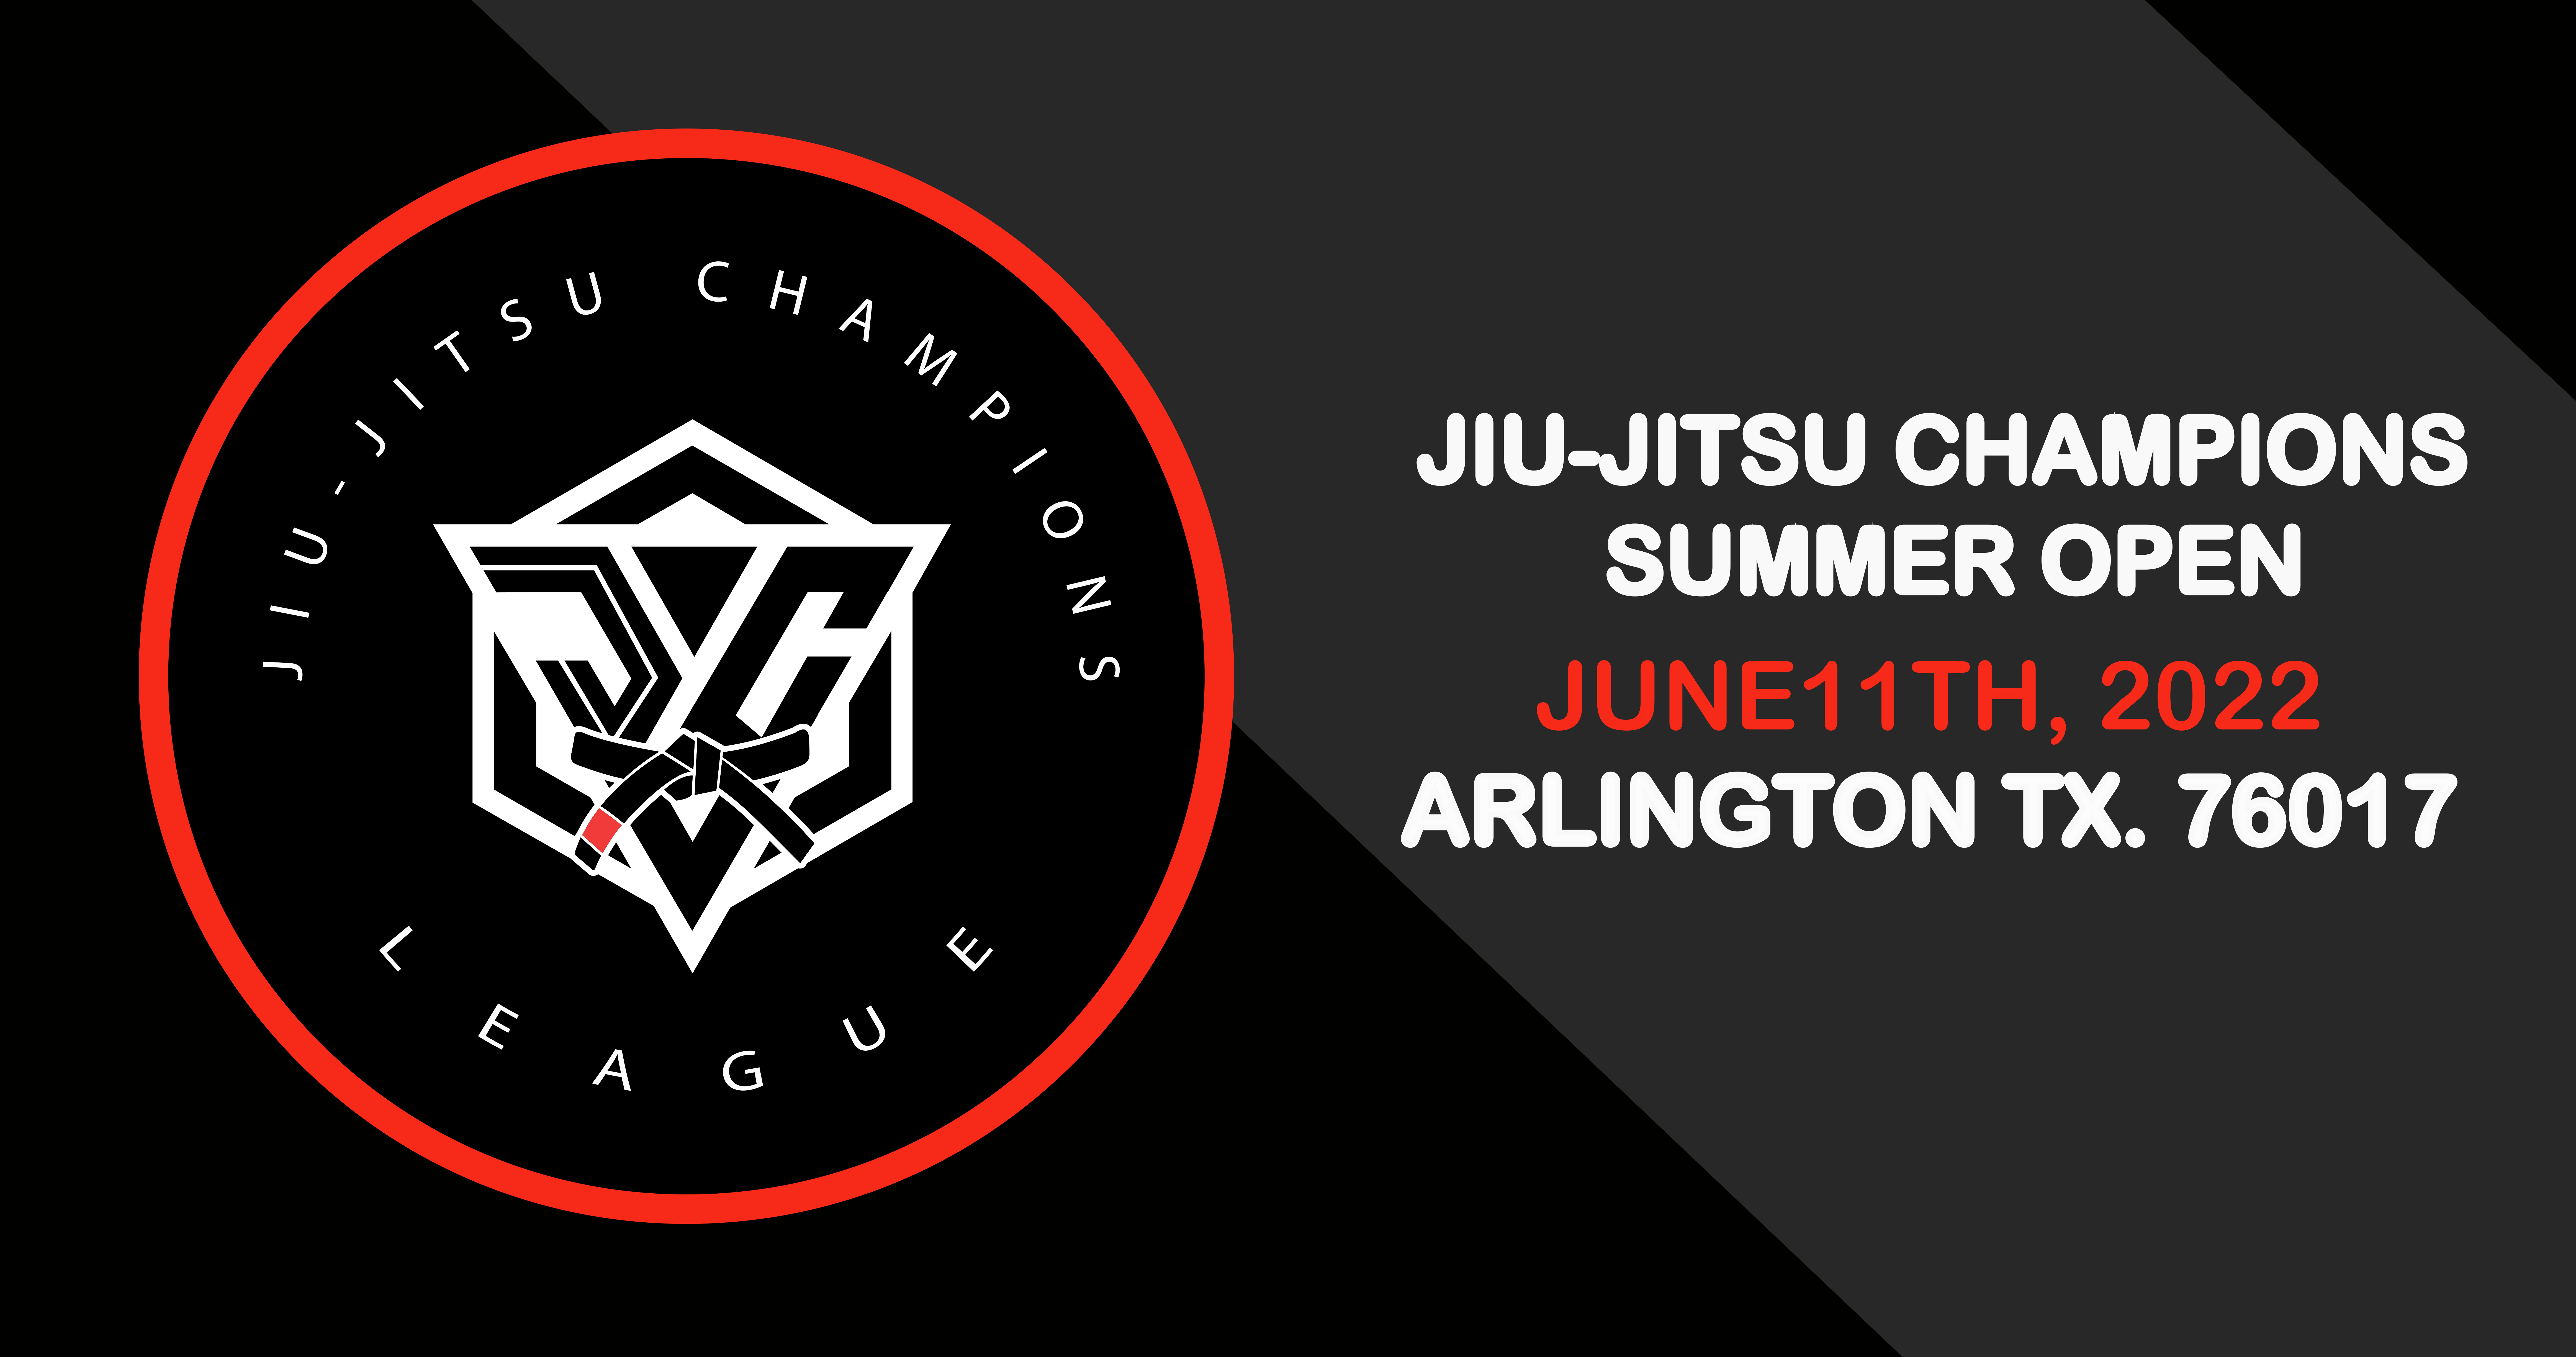 jiu-jitsu champions summer open